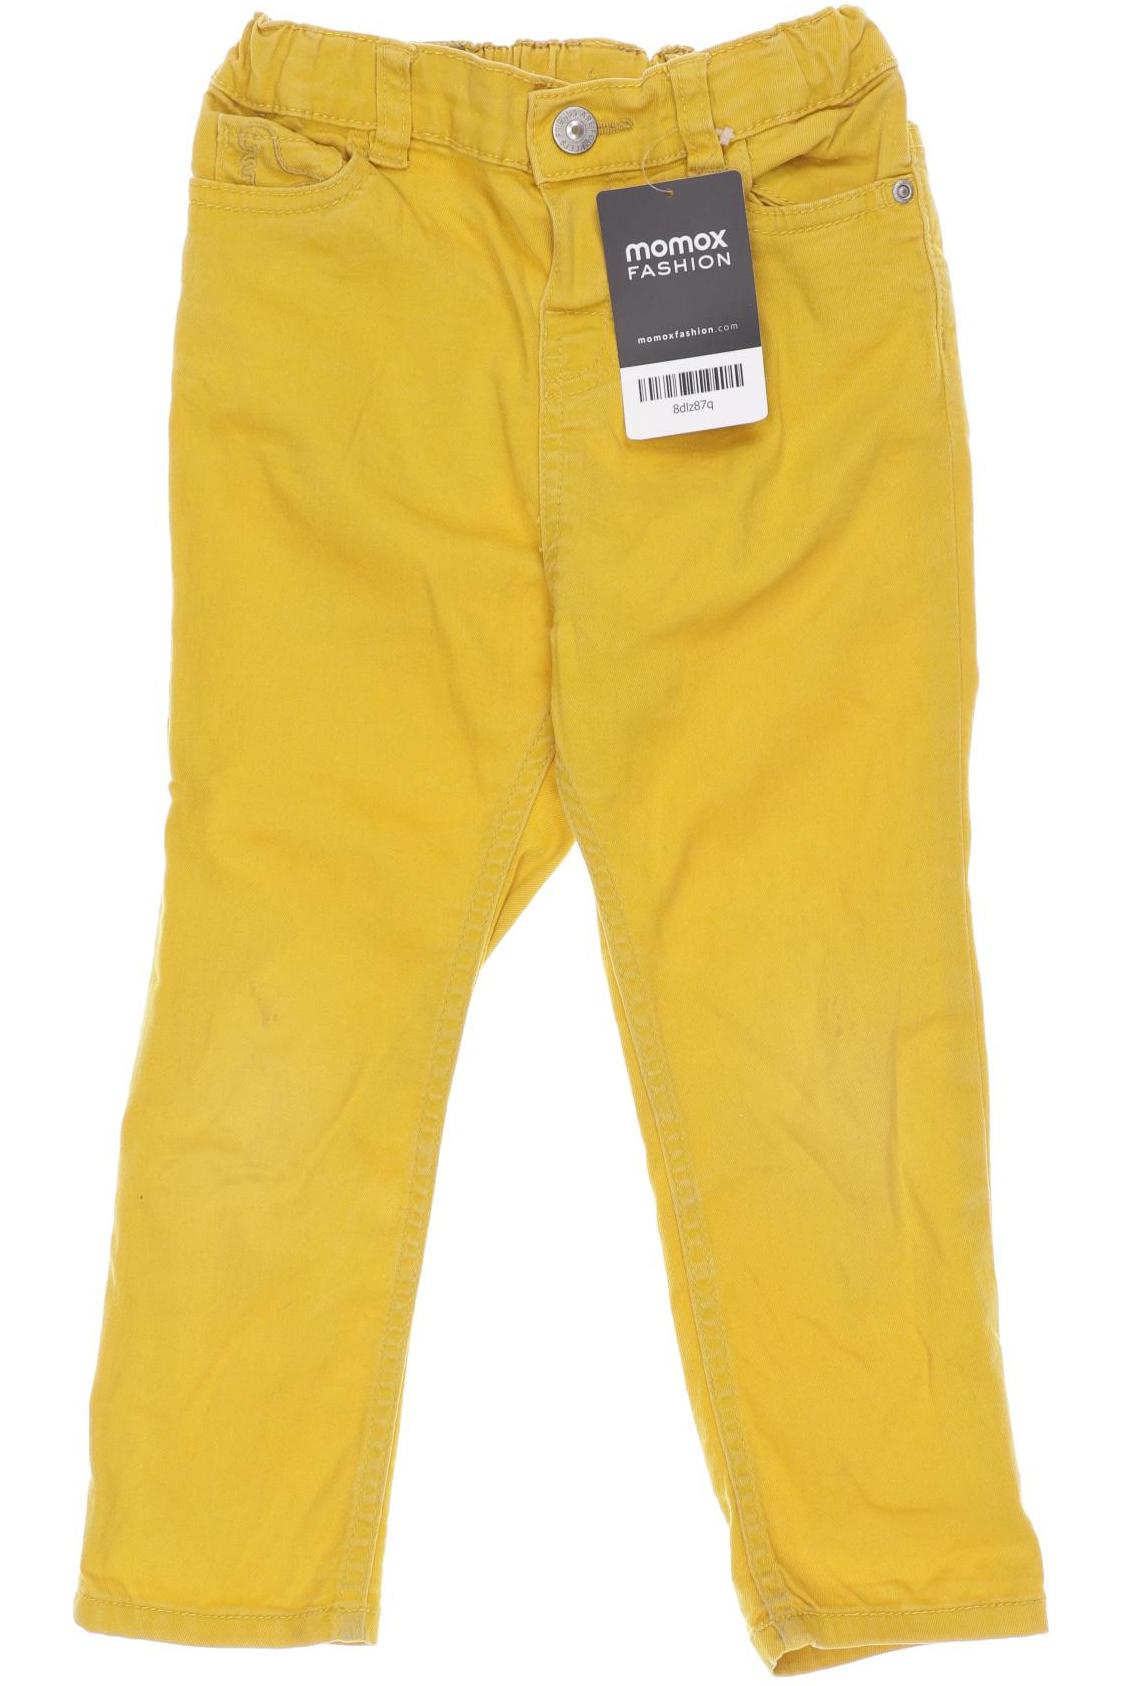 H&M Jungen Jeans, gelb von H&M